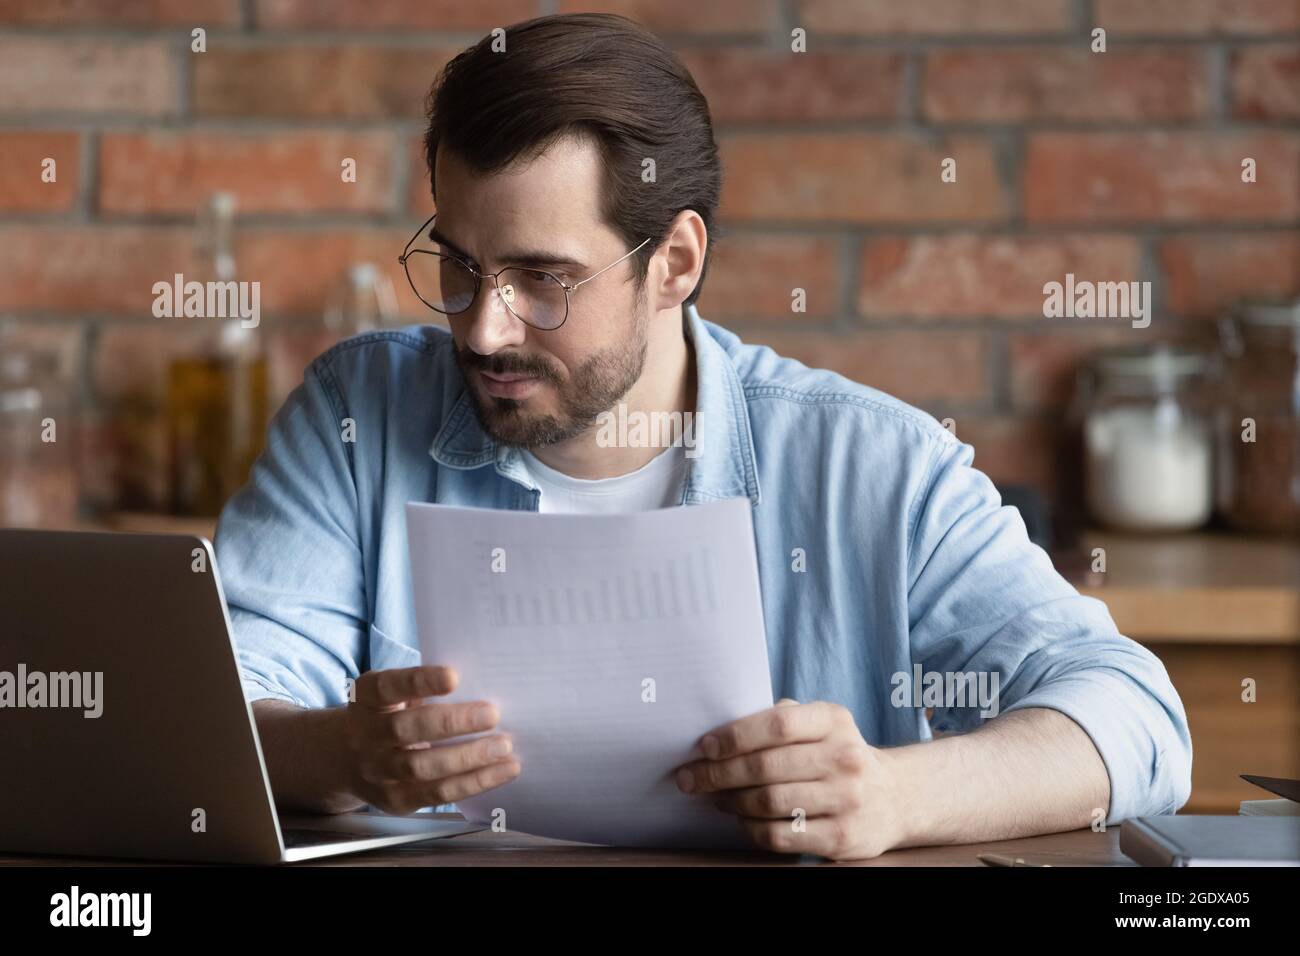 Un homme millénaire sérieux travaille sur un ordinateur portable avec des documents administratifs Banque D'Images